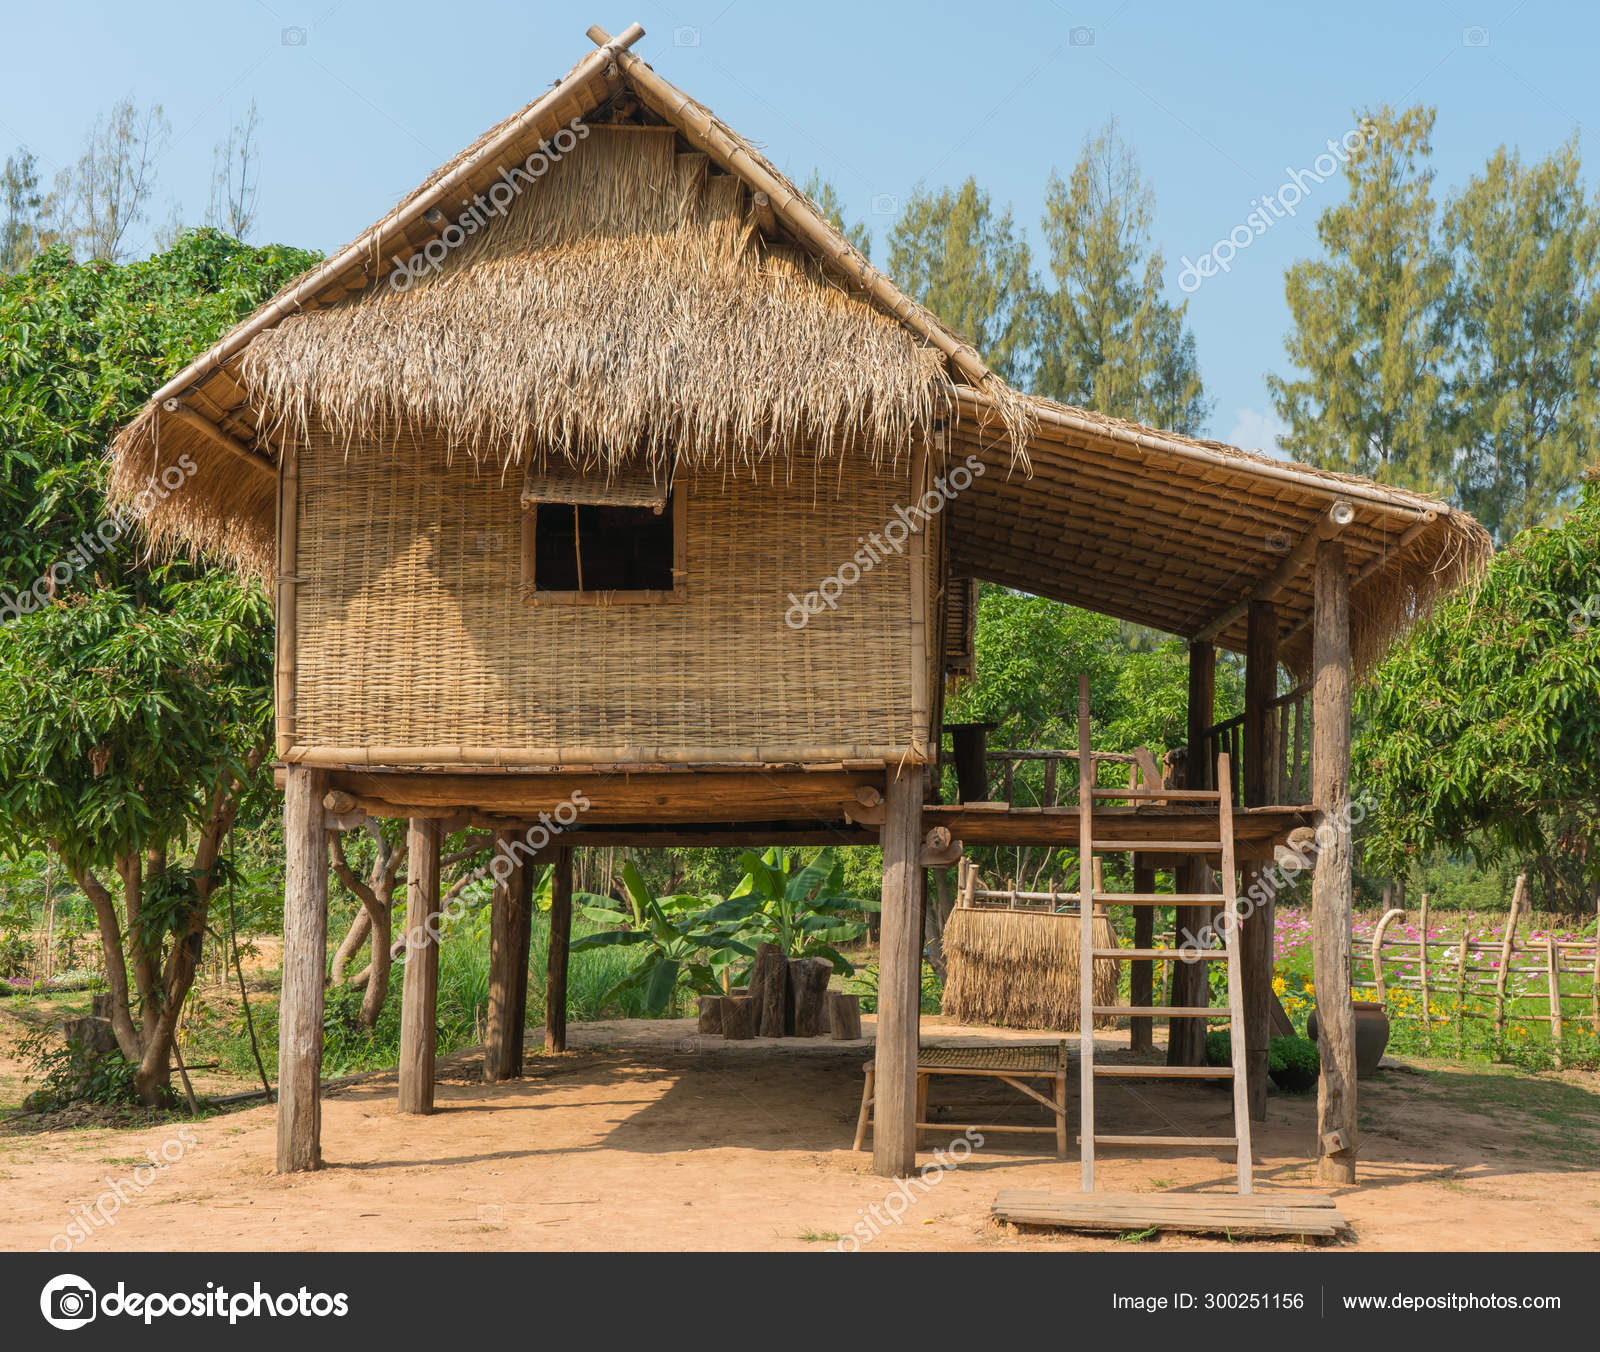 Thai Cottage Or Hut In The Garden Stock Photo C Casanowe1 300251156